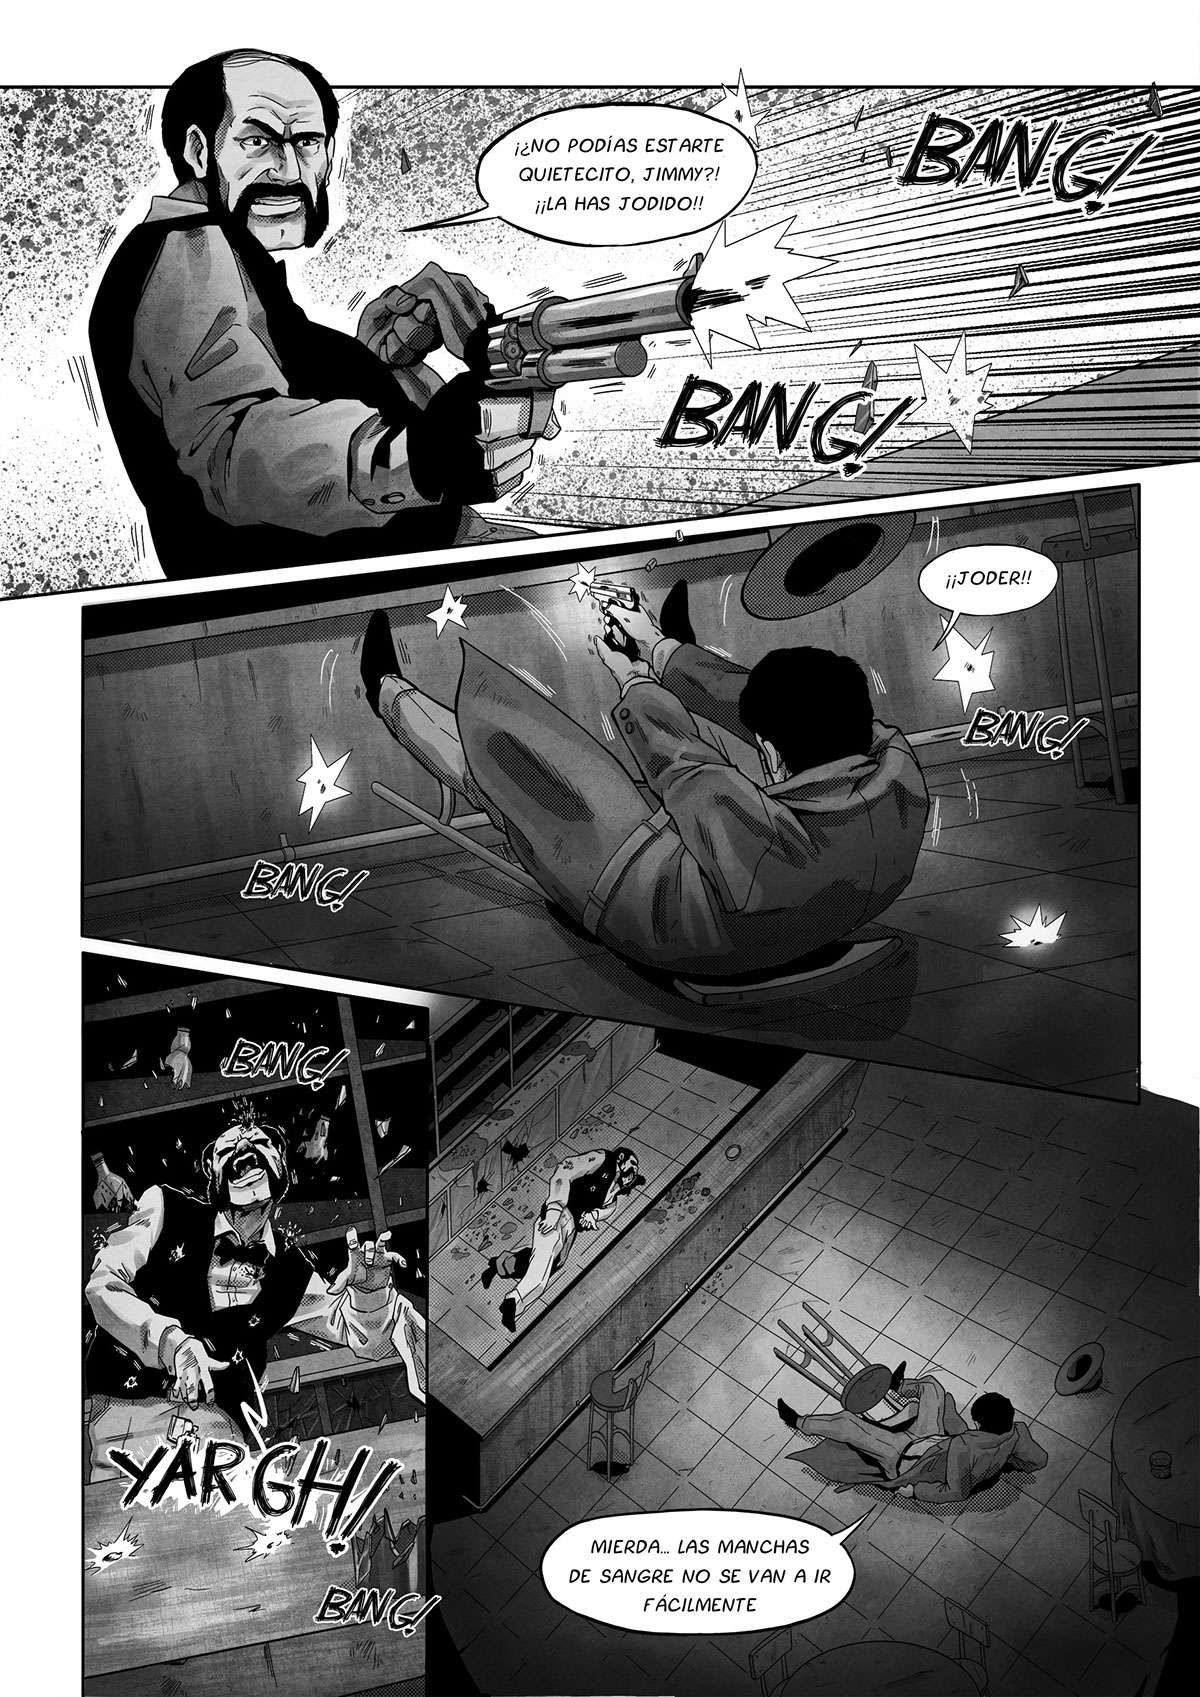 comic noir ilustration Character design  composition